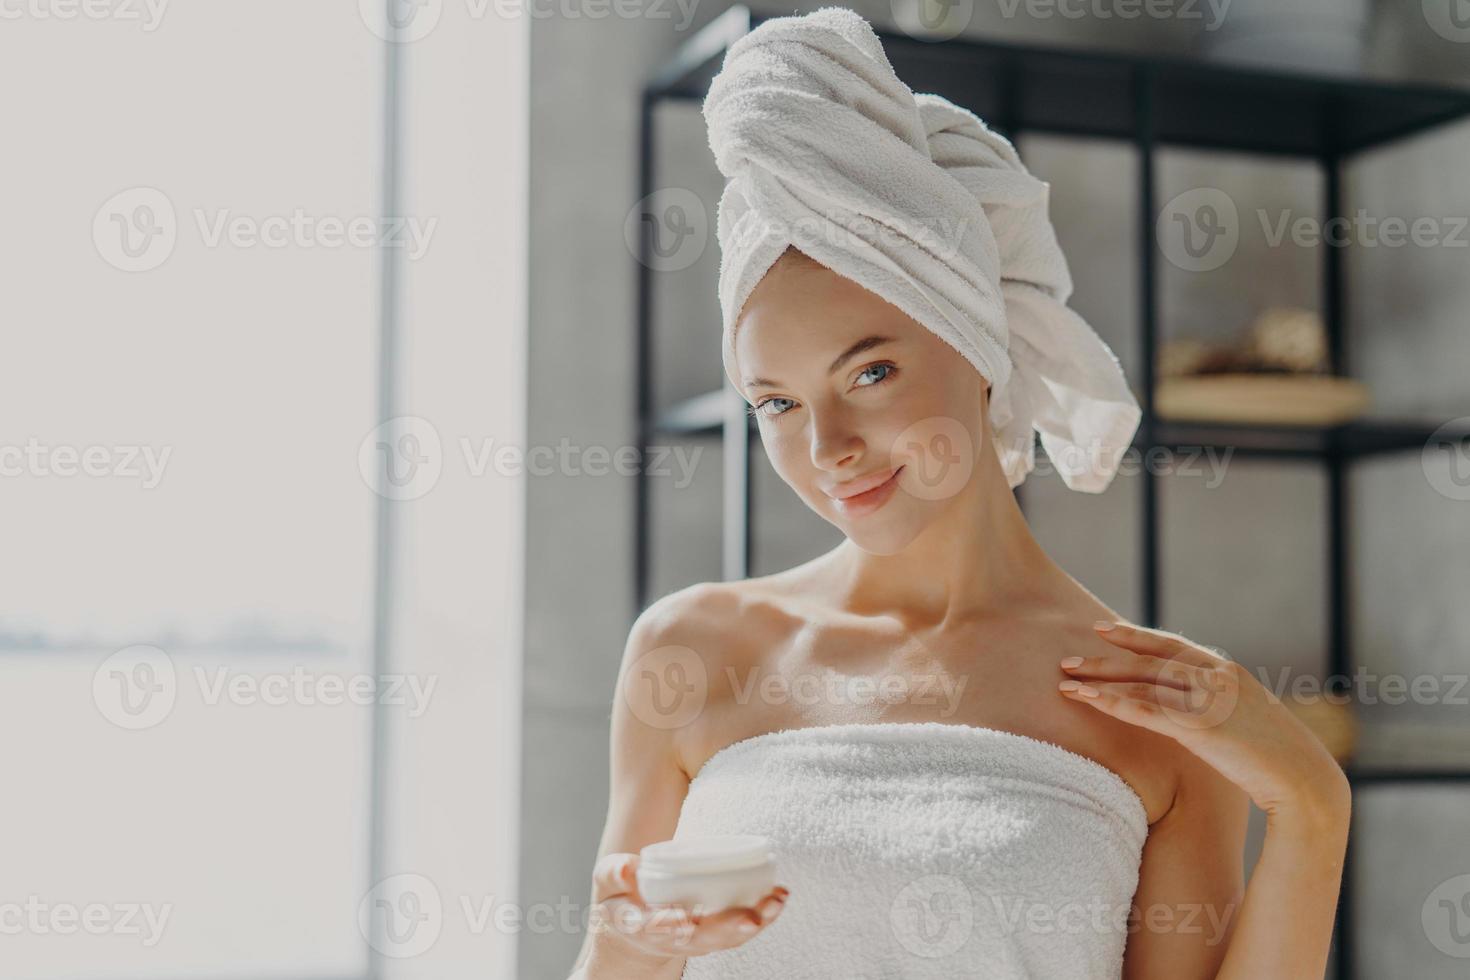 foto av nöjd ung kvinna har frisk ren hud, applicerar kroppskräm, använder hudbehandling för att återfukta, står inlindad i en handduk, ler försiktigt. personlig vård, skönhet och välbefinnande koncept